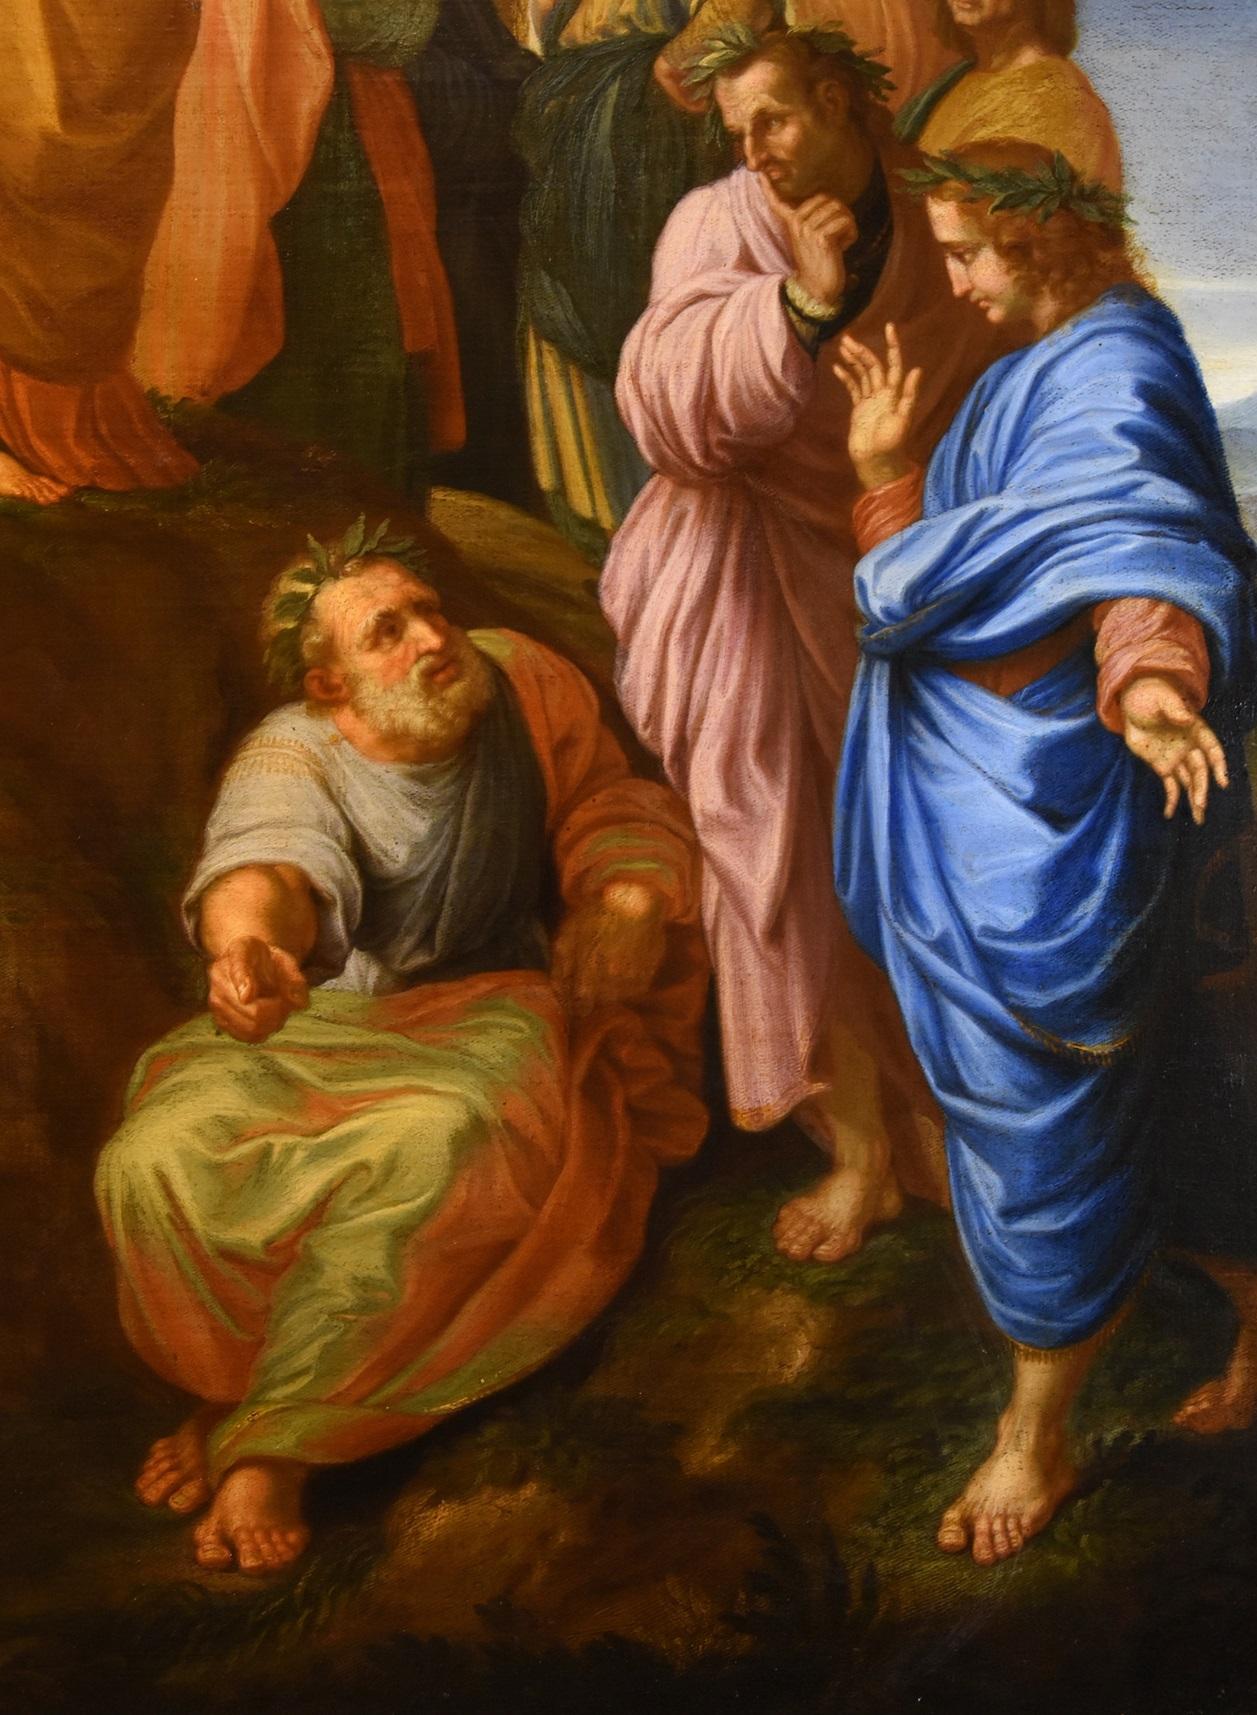 nach RAFFAELLO SANZIO (Urbino, 1483 - Rom, 1520), 
Der Parnass mit Apollo, den Musen und den antiken und modernen Dichtern

17. bis 18. Jahrhundert
Öl auf Leinwand (123 x 173 cm - gerahmt 137 x 187 cm.)

Dieses raffinierte Gemälde von beträchtlicher